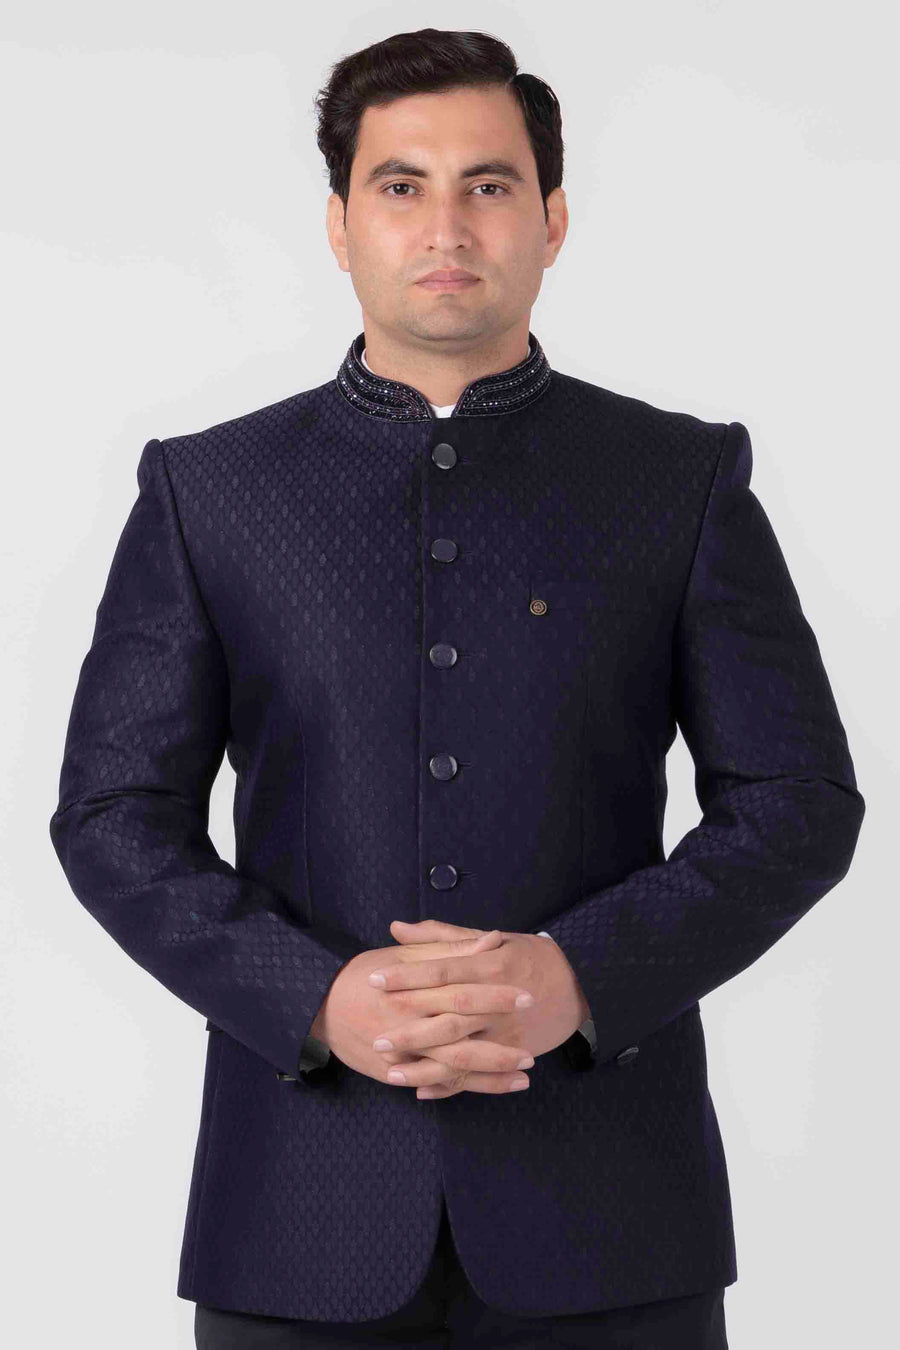 Jodhpuri Suit Black Jacket Suiting Fabric Elegant Dress Bhandhgala Coat  Pant Wedding Safari Sherwani for Men Designer Blazer Outfit - Etsy Hong Kong